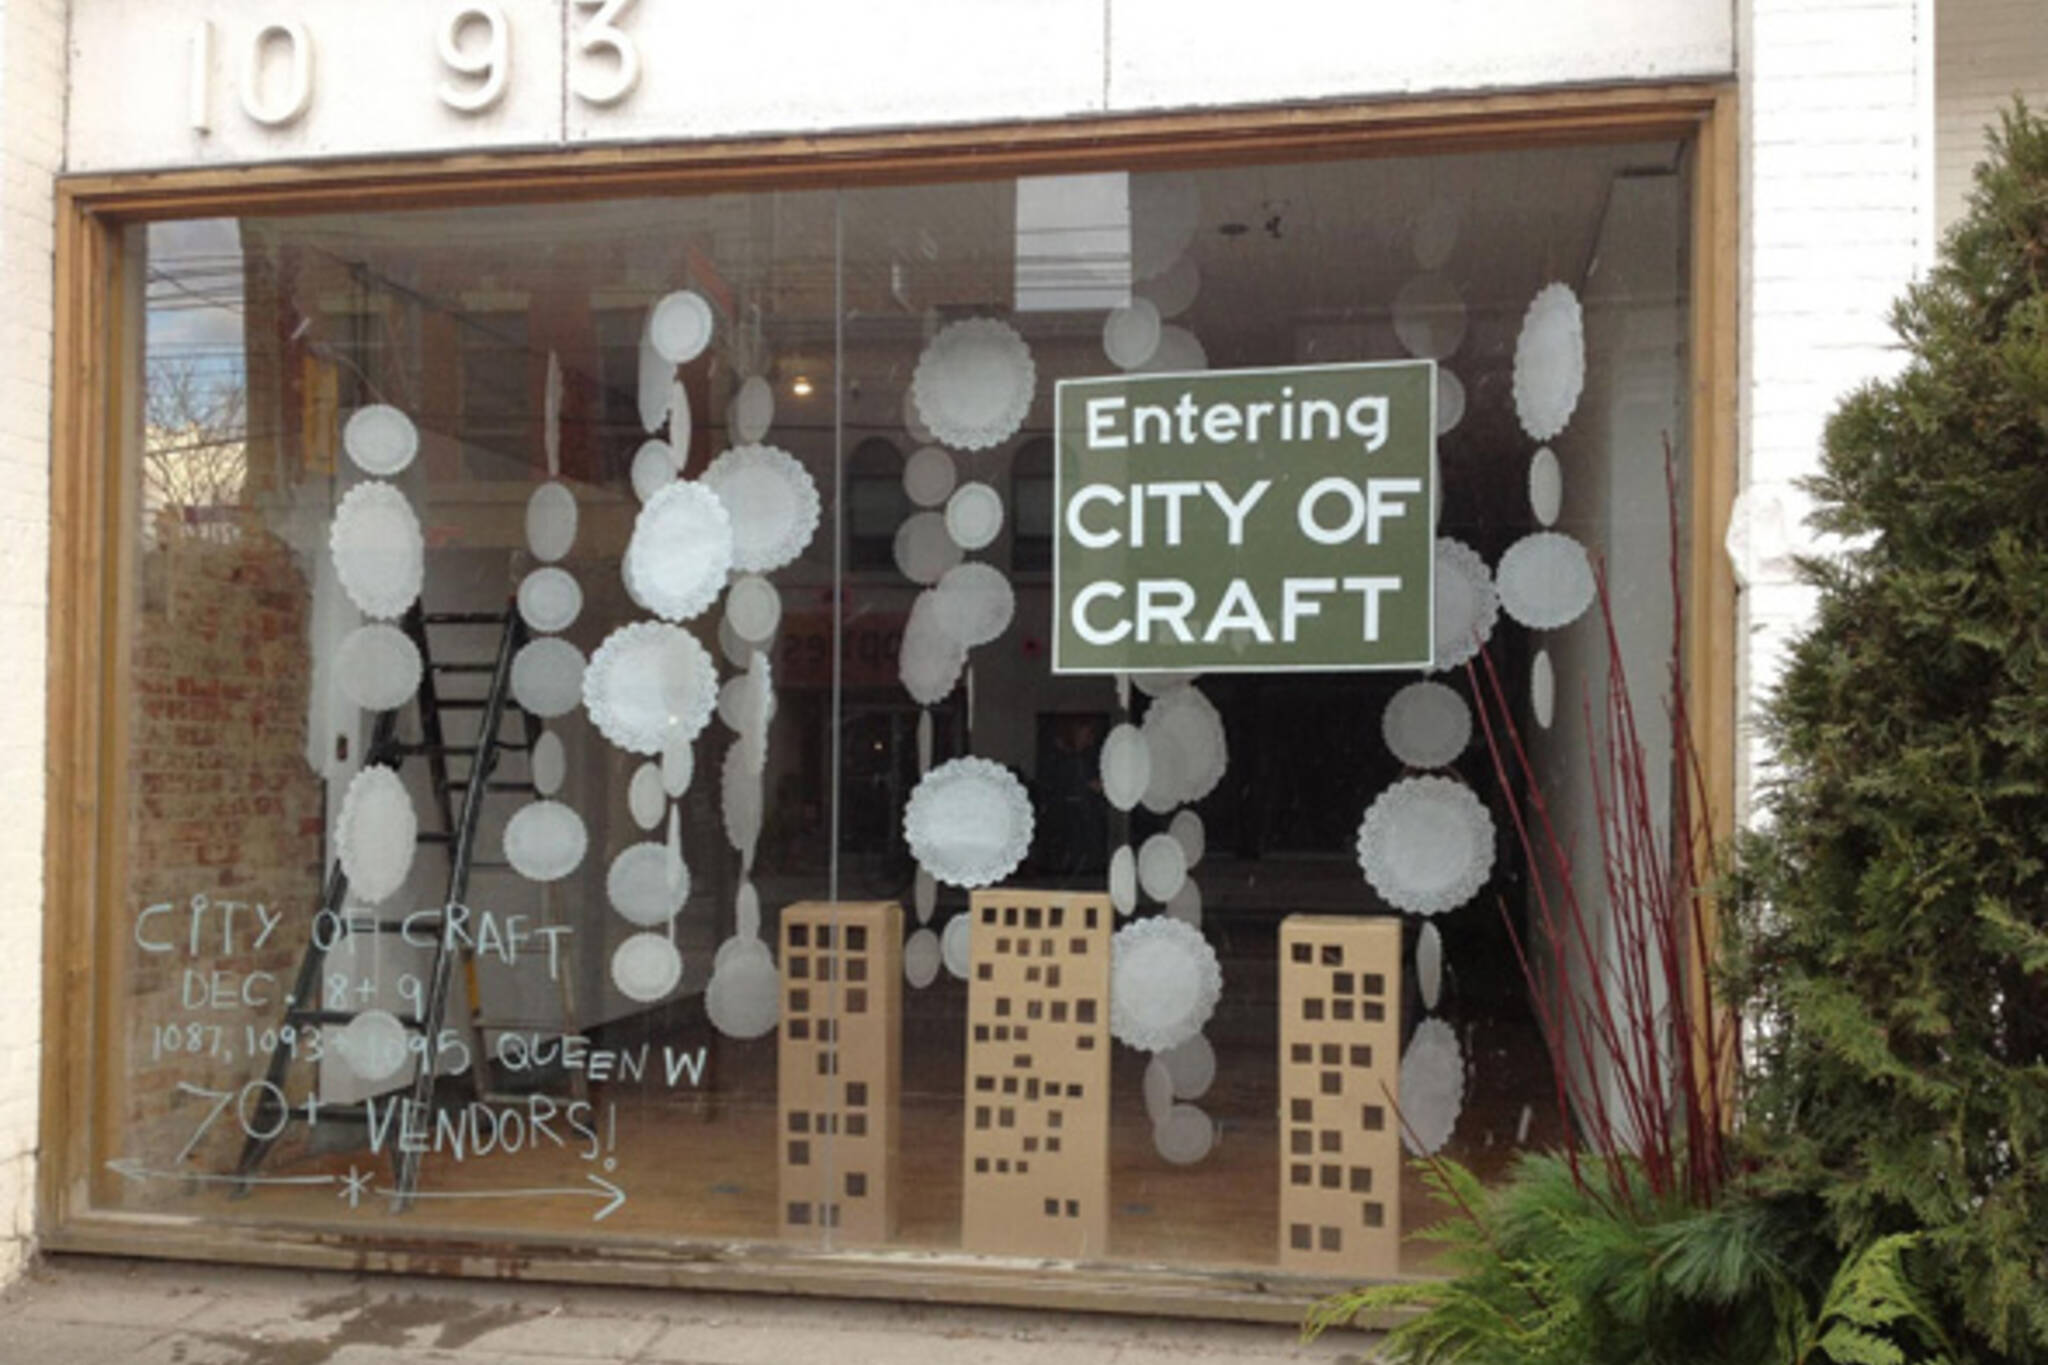 City of Craft